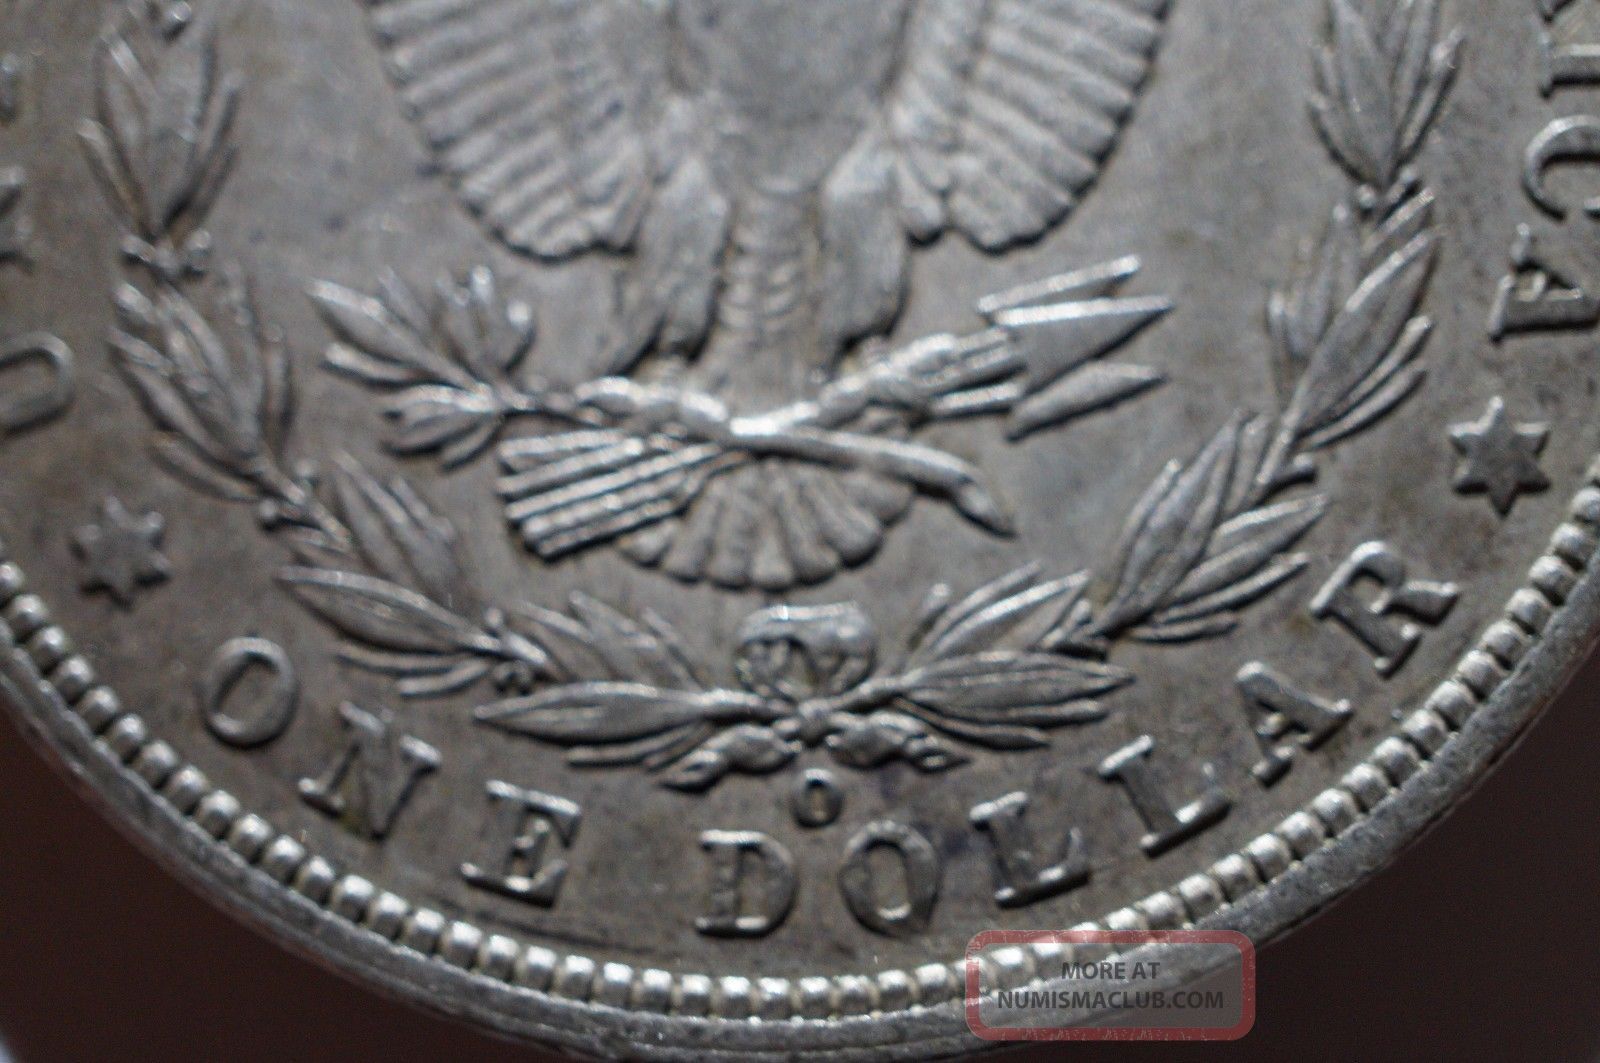 1901 - O Morgan Dollar